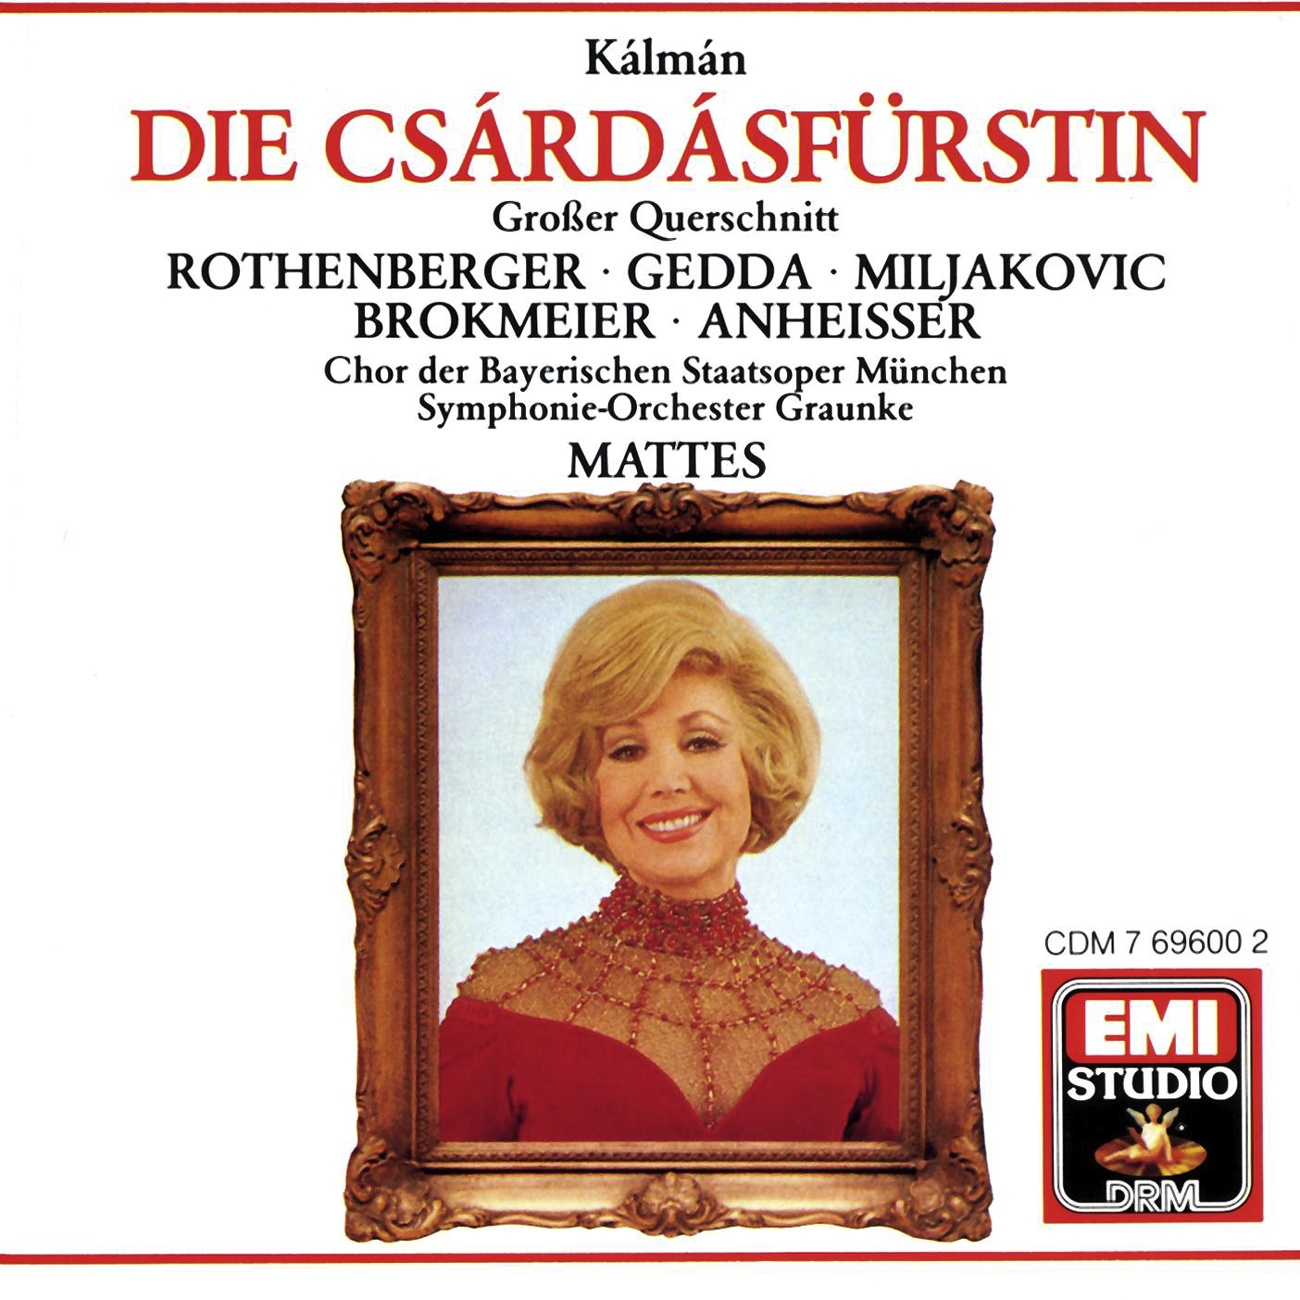 Die Csa rda sfü rstin  Operette in 3 Akten Highlights 1988 Digital Remaster: Tausend kleine Engel singen Sylva  Stasi  Boni